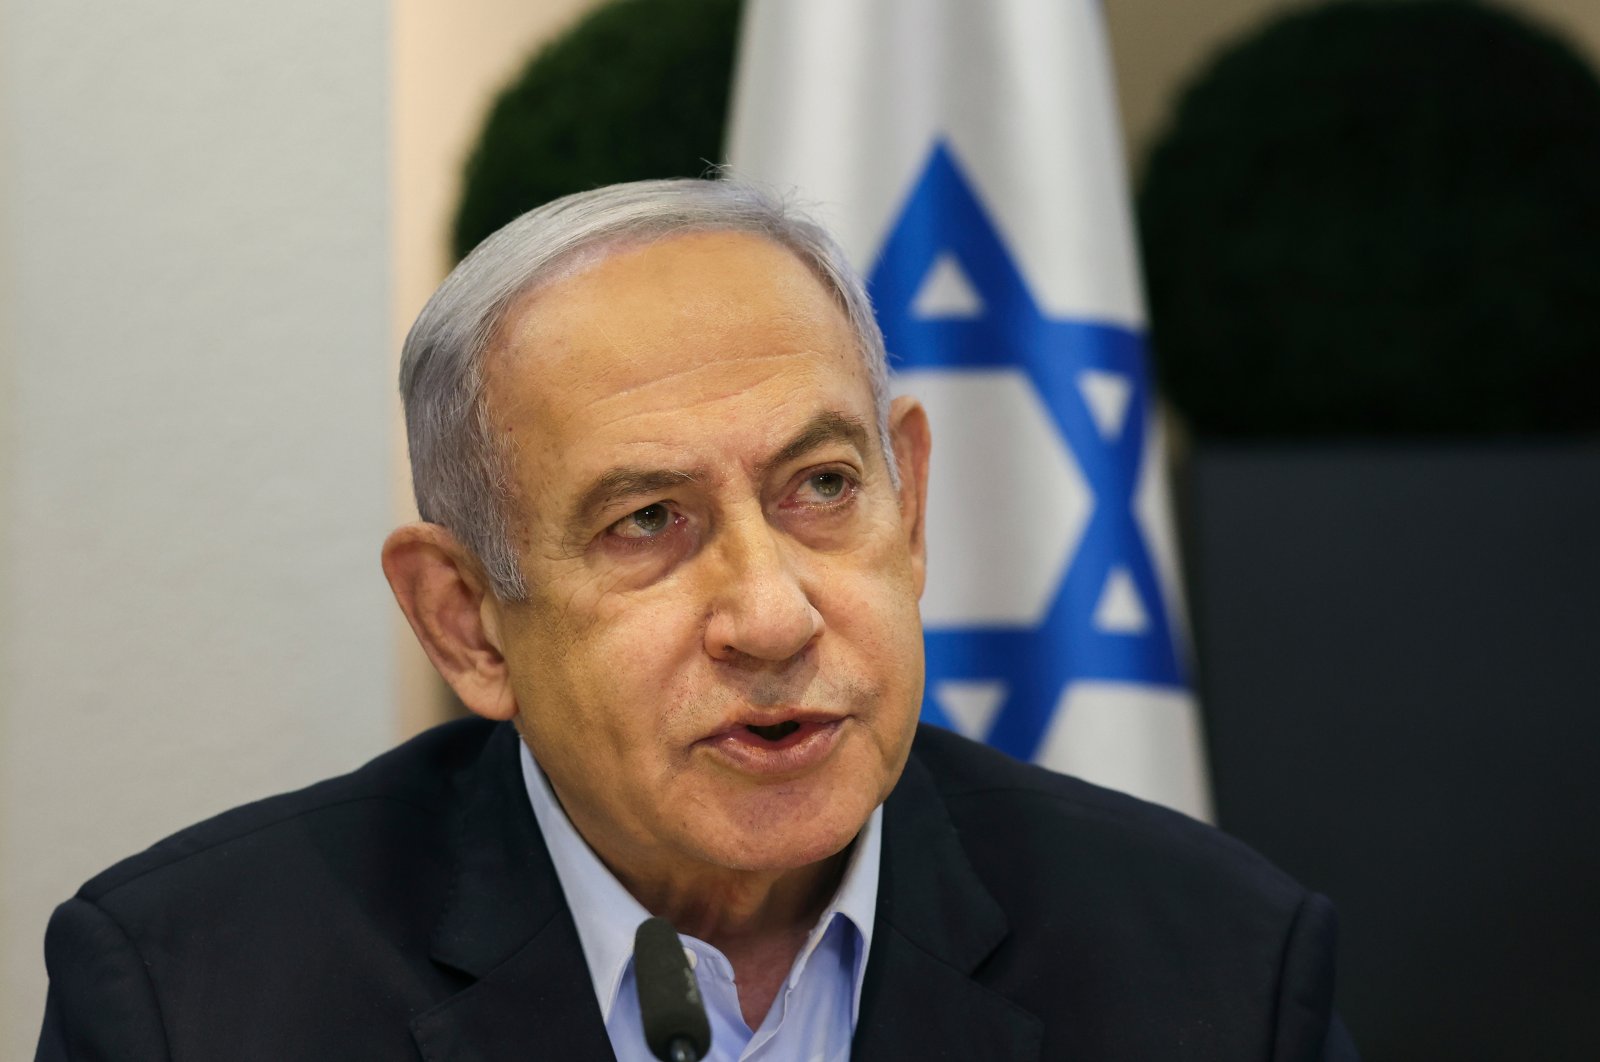 Israel's Netanyahu hints imminent retaliation after Iran's attack